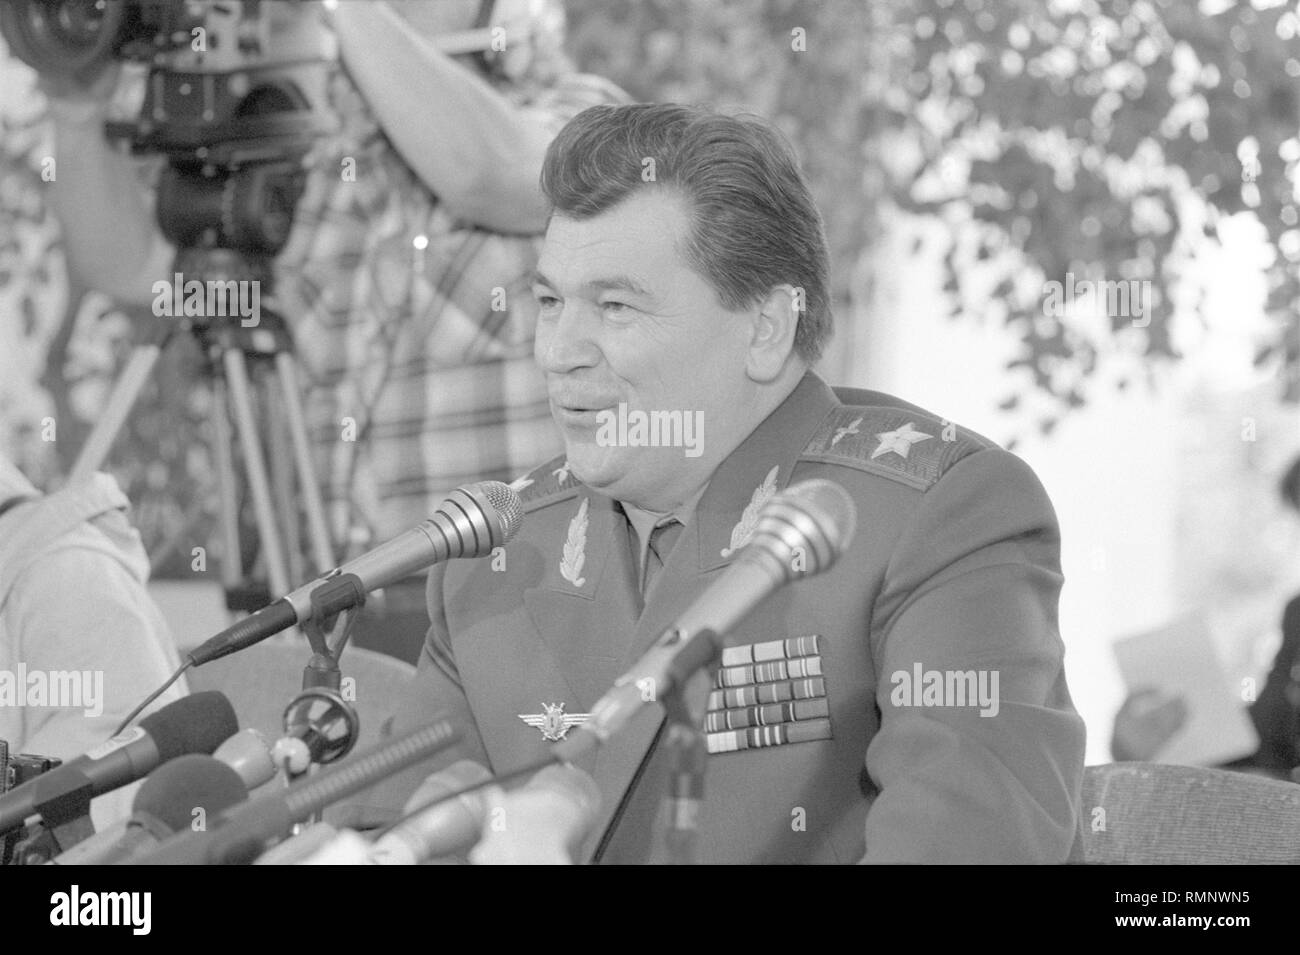 Moscou, URSS - 23 août 1991 : Le ministre de la défense de l'URSS Yevgeni Ivanovitch Shaposhnikov donne une conférence de presse de la session extraordinaire du Soviet suprême de députés du peuple de l'URSS Banque D'Images